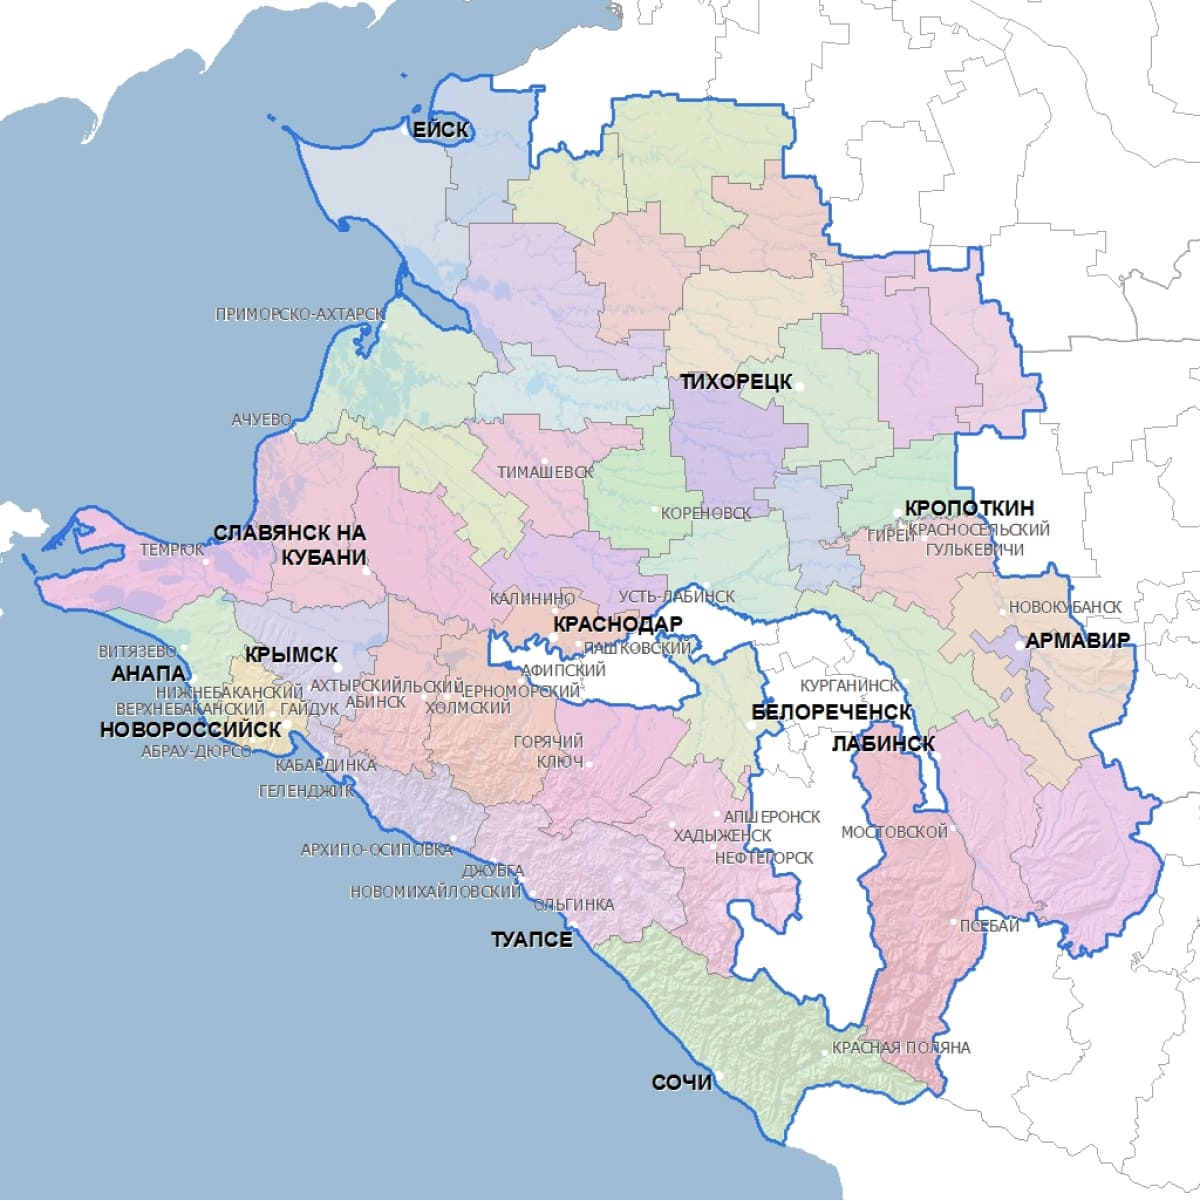 На территории краснодарского края проживает. Краснодар на карте Кубани. Границы Кубани на карте Краснодарского края. Кубань регион на карте. Территория Краснодарского края на карте.